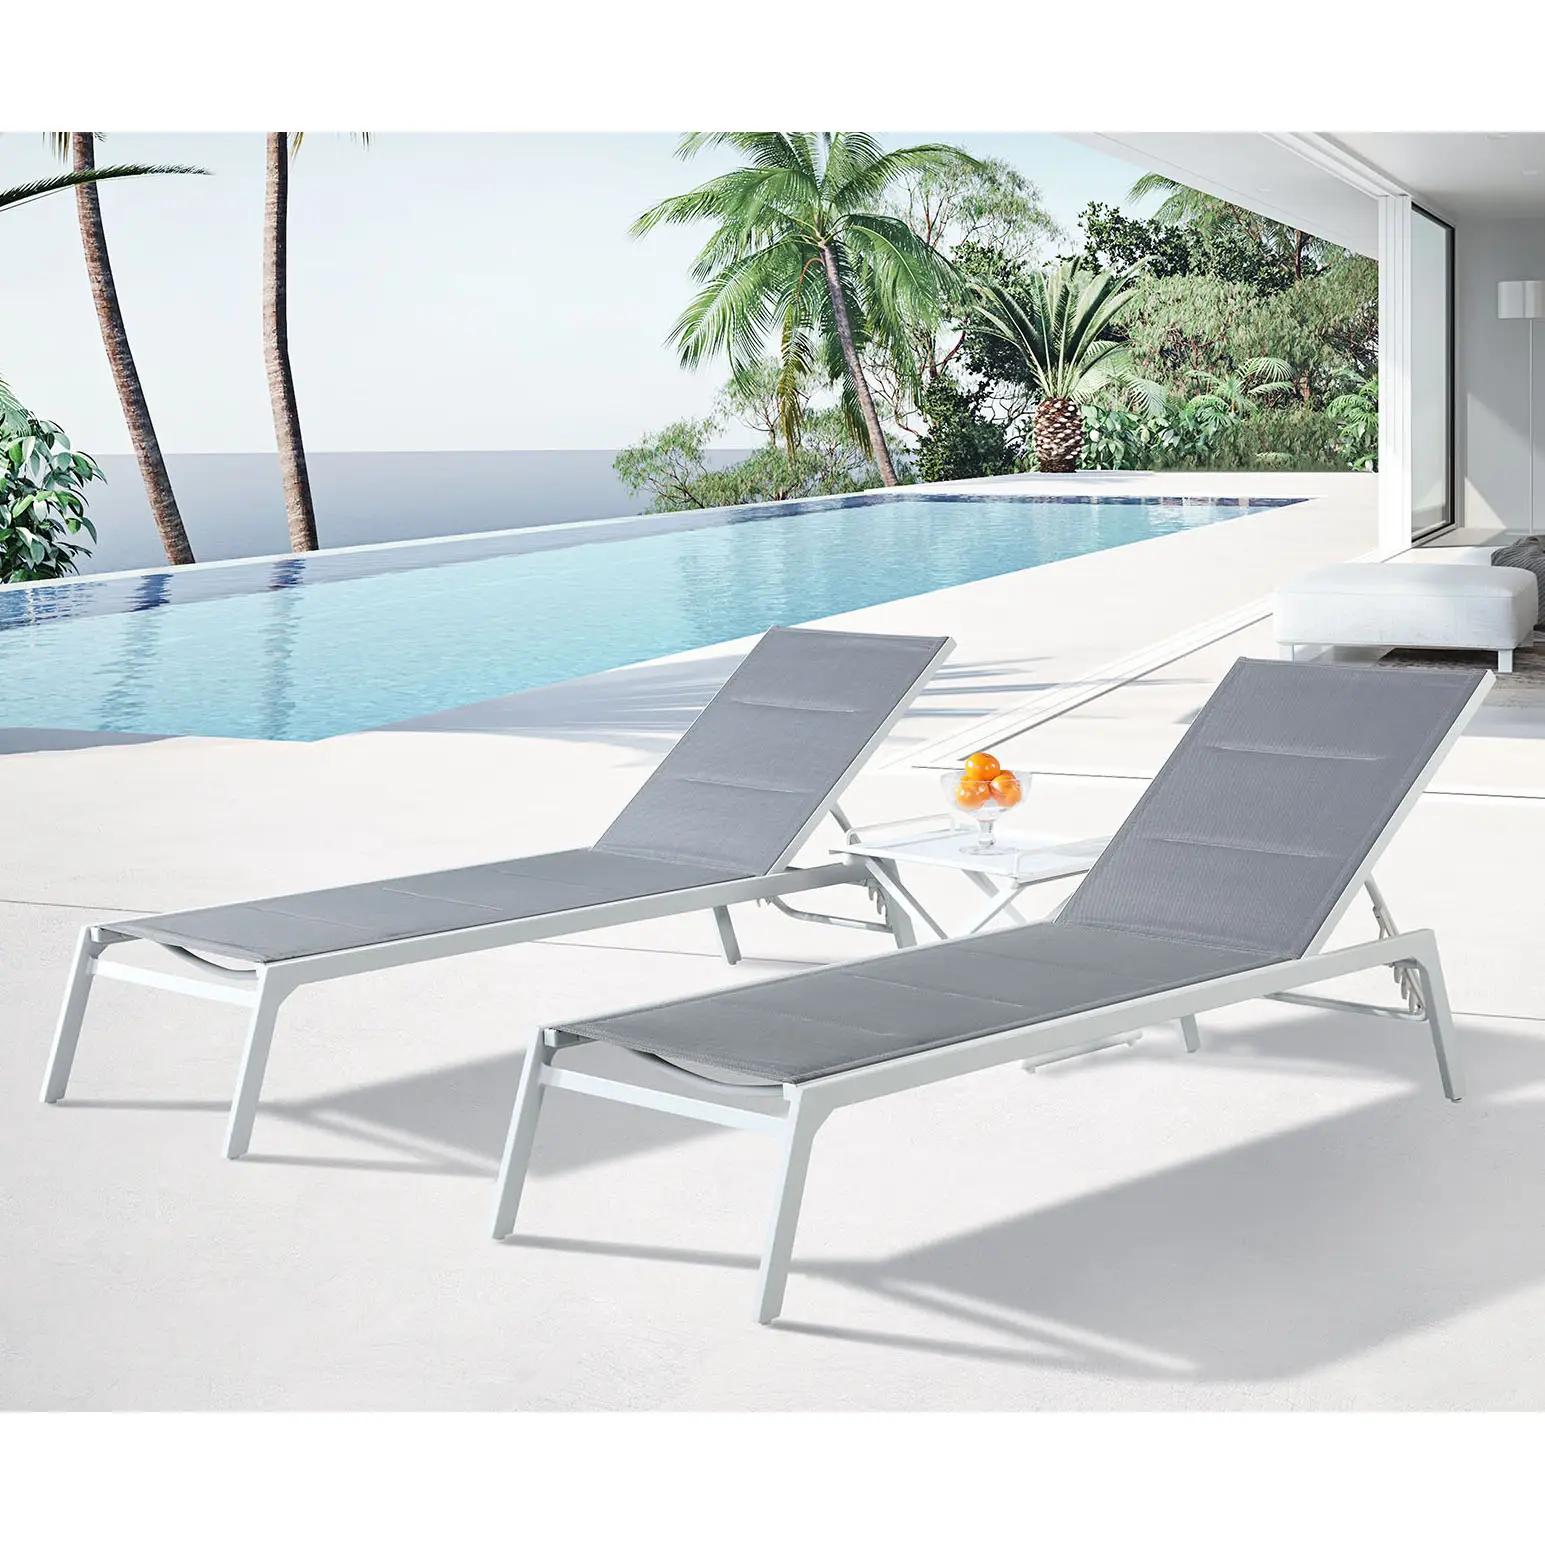 4 adet kumaş veranda dış mekan mobilyası alüminyum texti kullanıyoruz len havuzu katlanabilir şezlong sandalye seti tabure ve tepsi